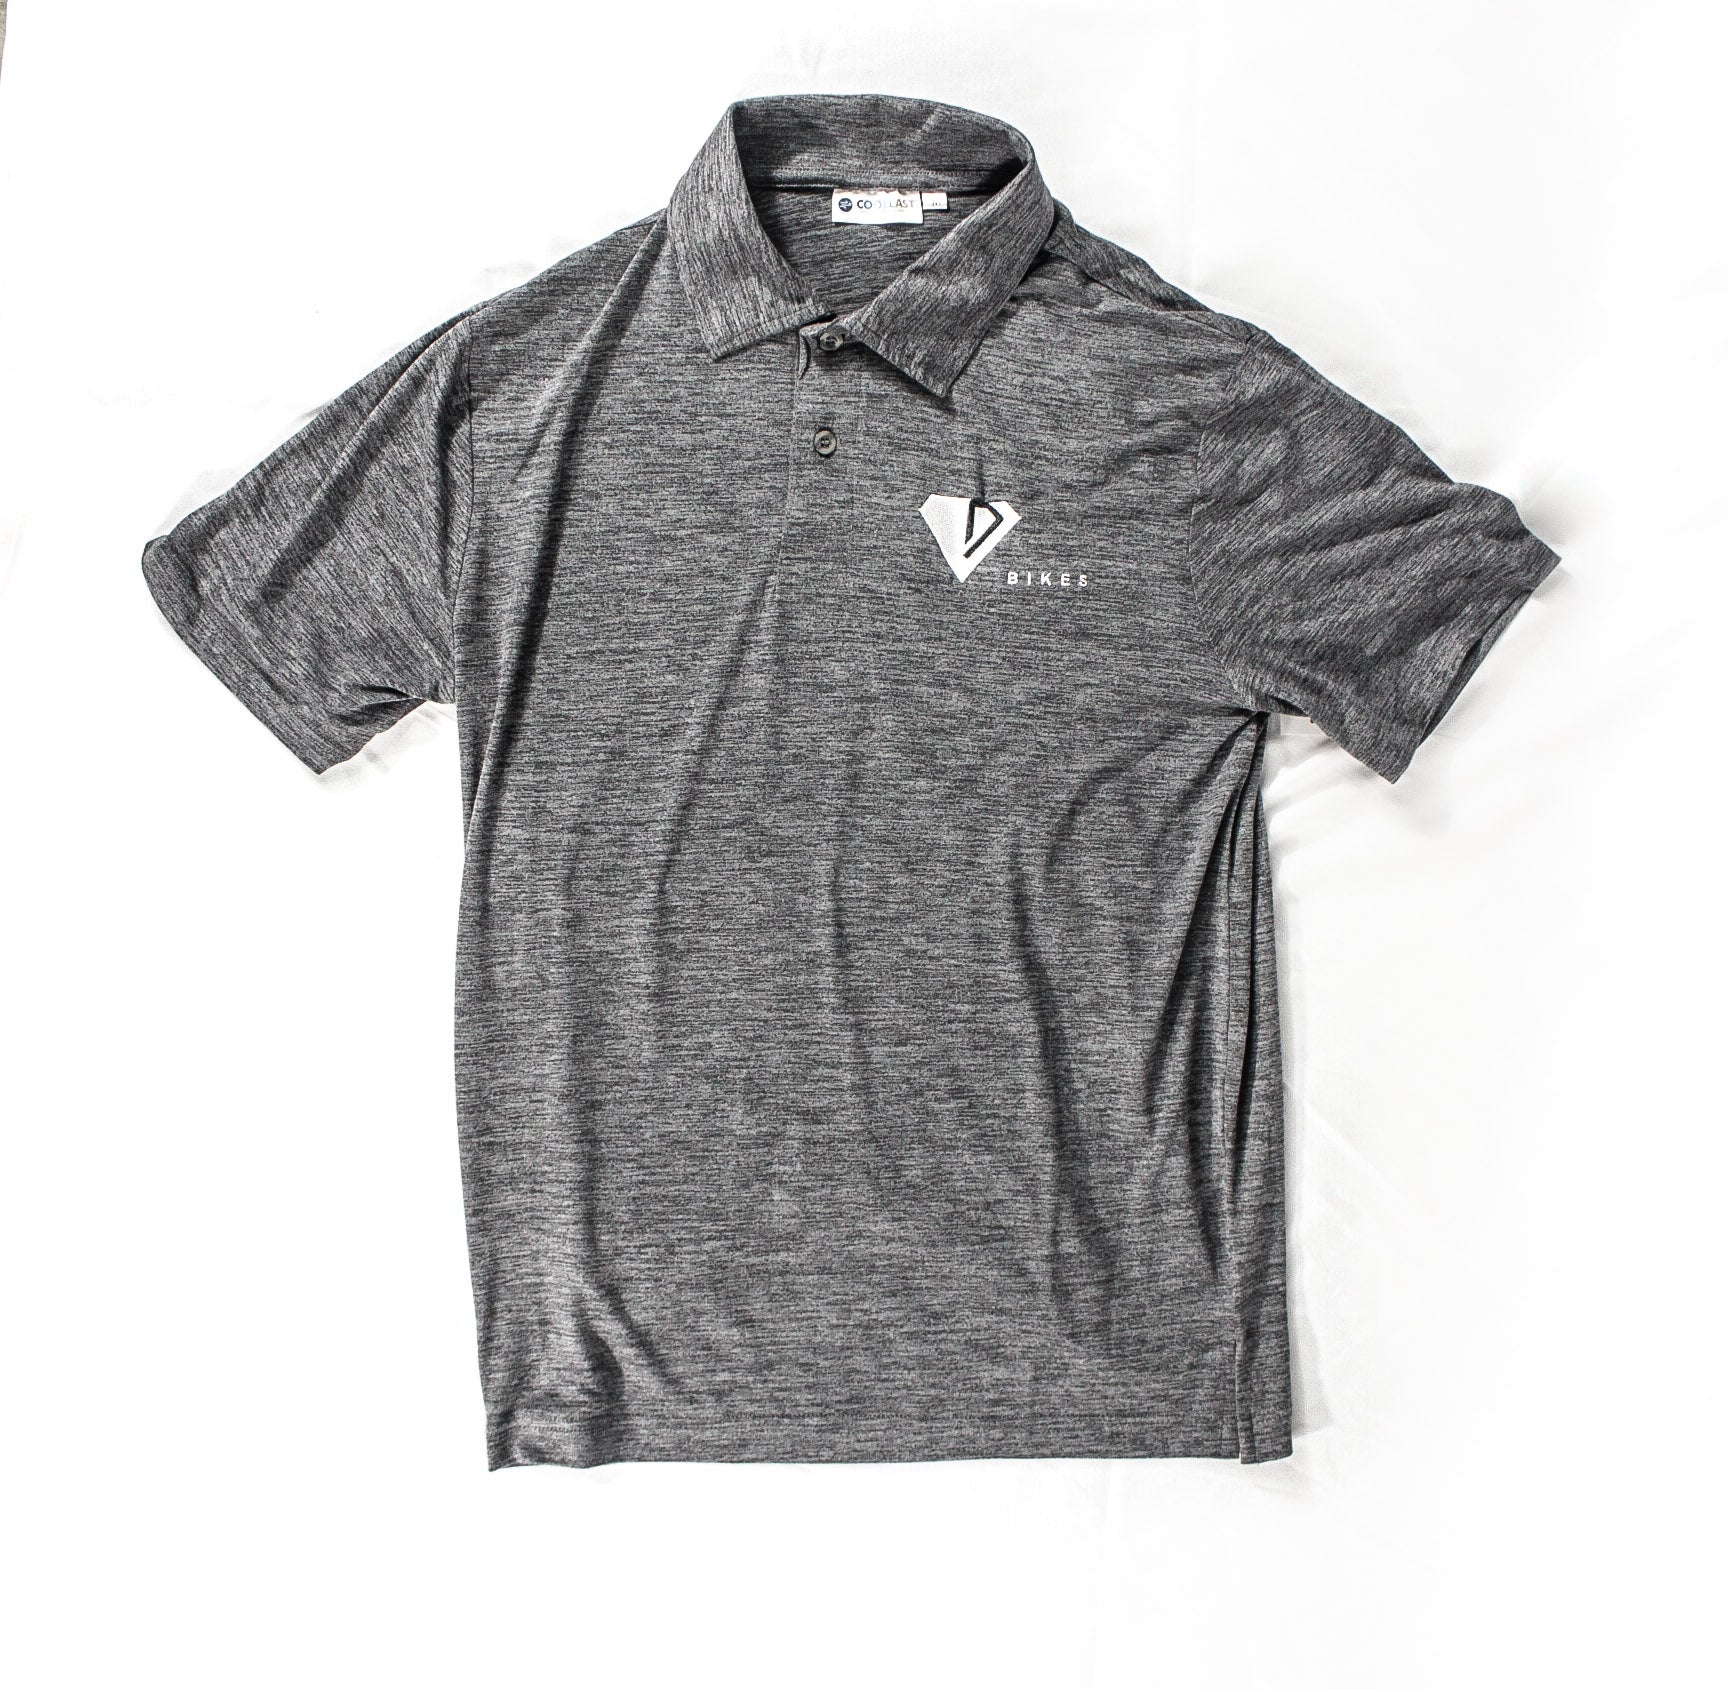 Dimond Golf Shirt